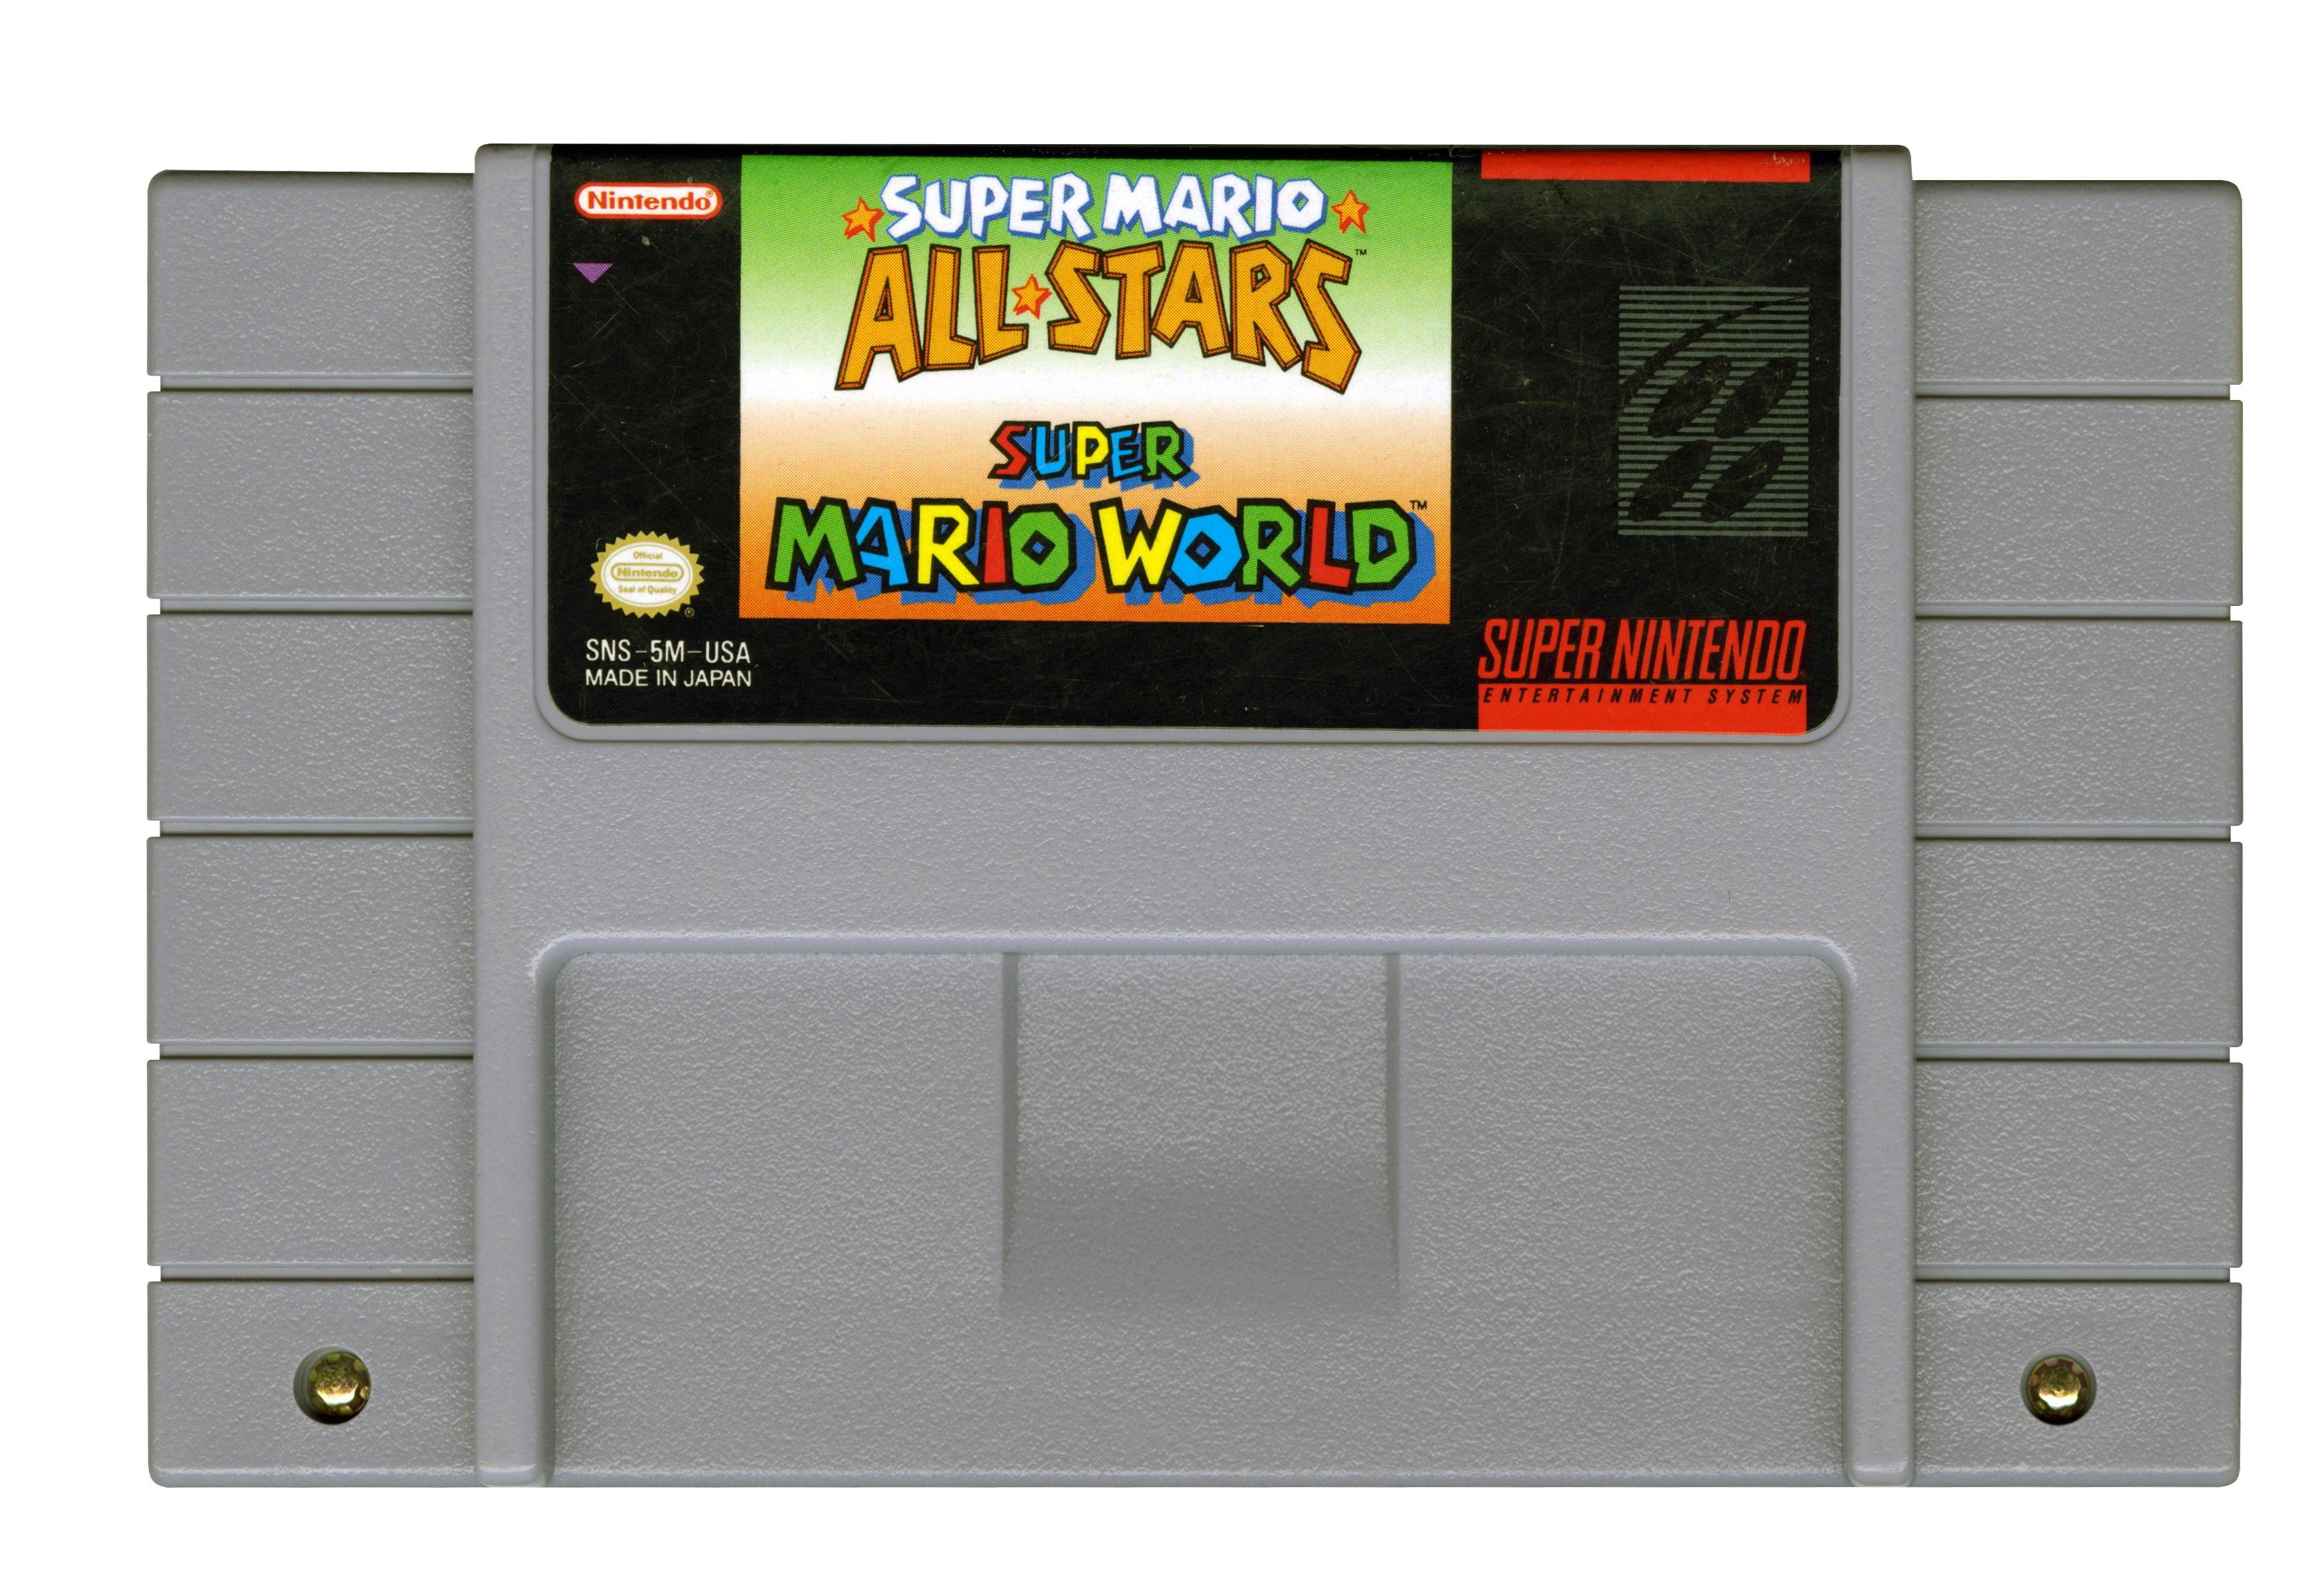 Moretón complicaciones entregar Super Mario All-Stars - SNES - with Super Mario World - Walmart.com